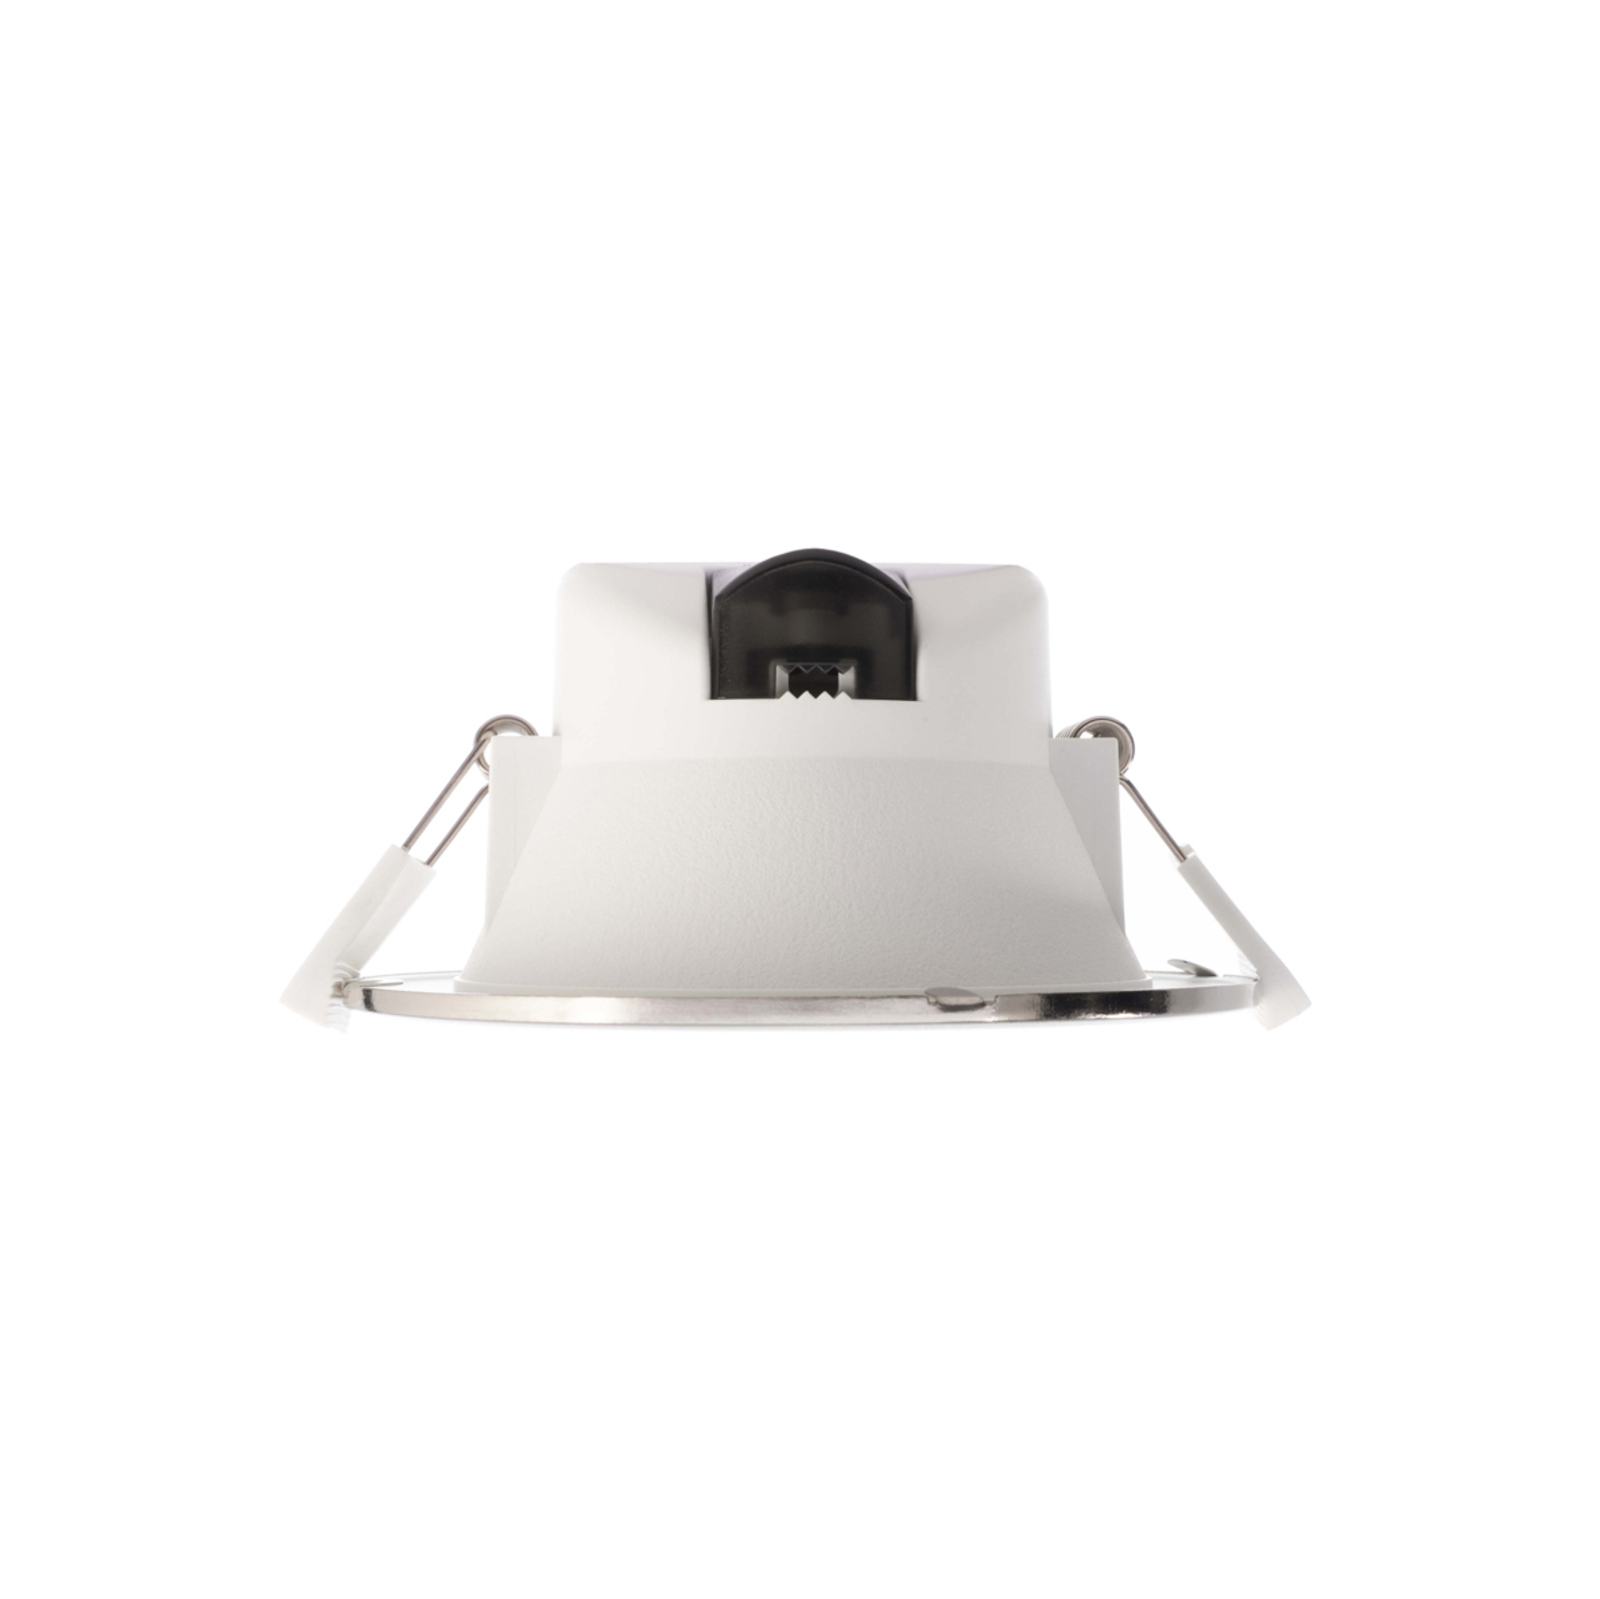 LED-Einbauleuchte Acrux 145, weiß, Ø 17,4 cm